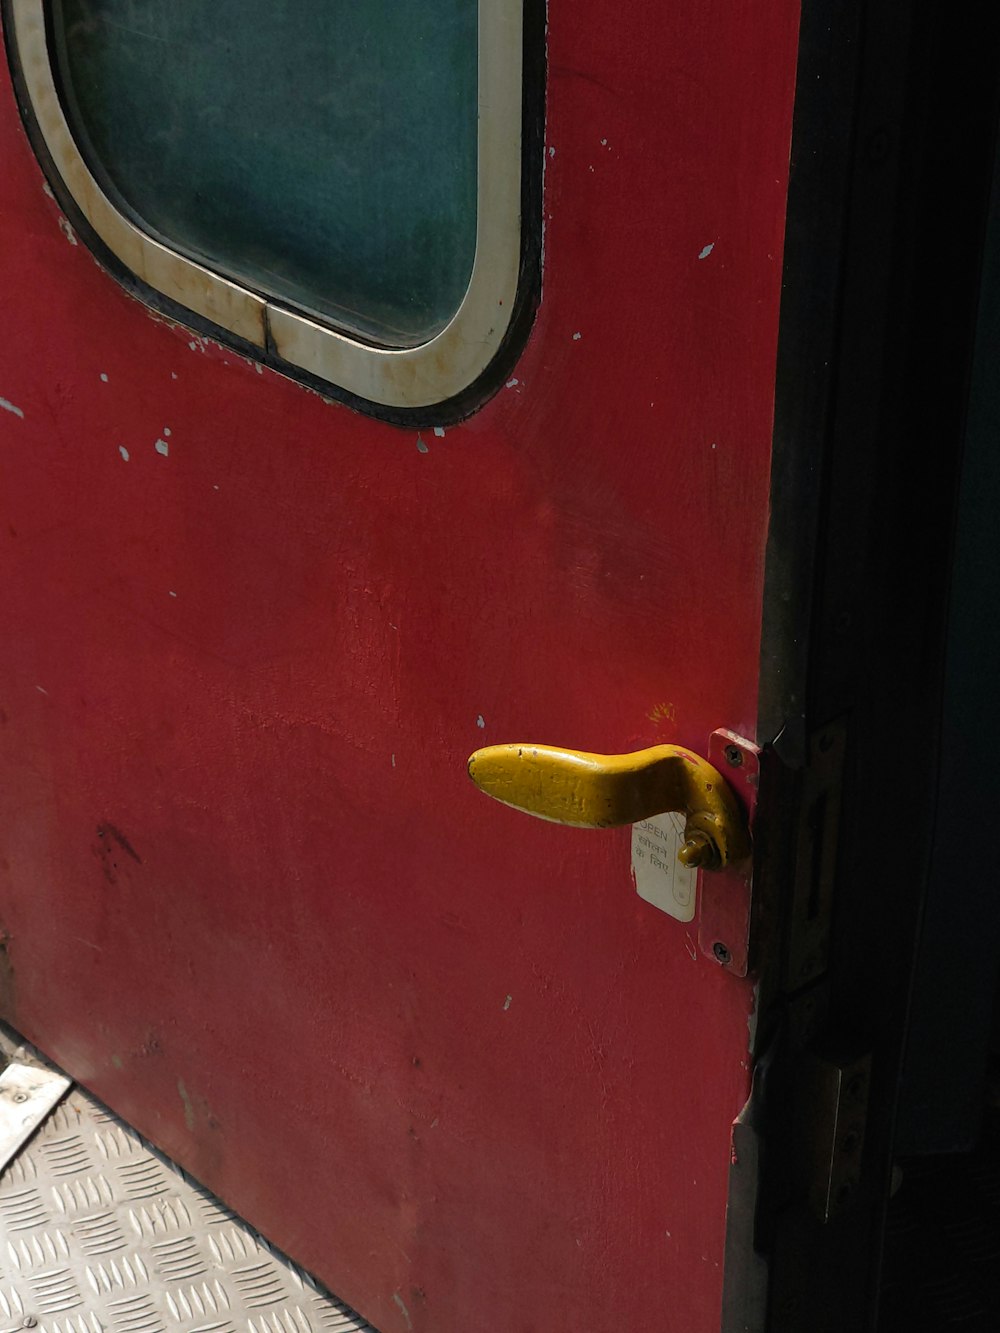 a close up of a door handle on a red door